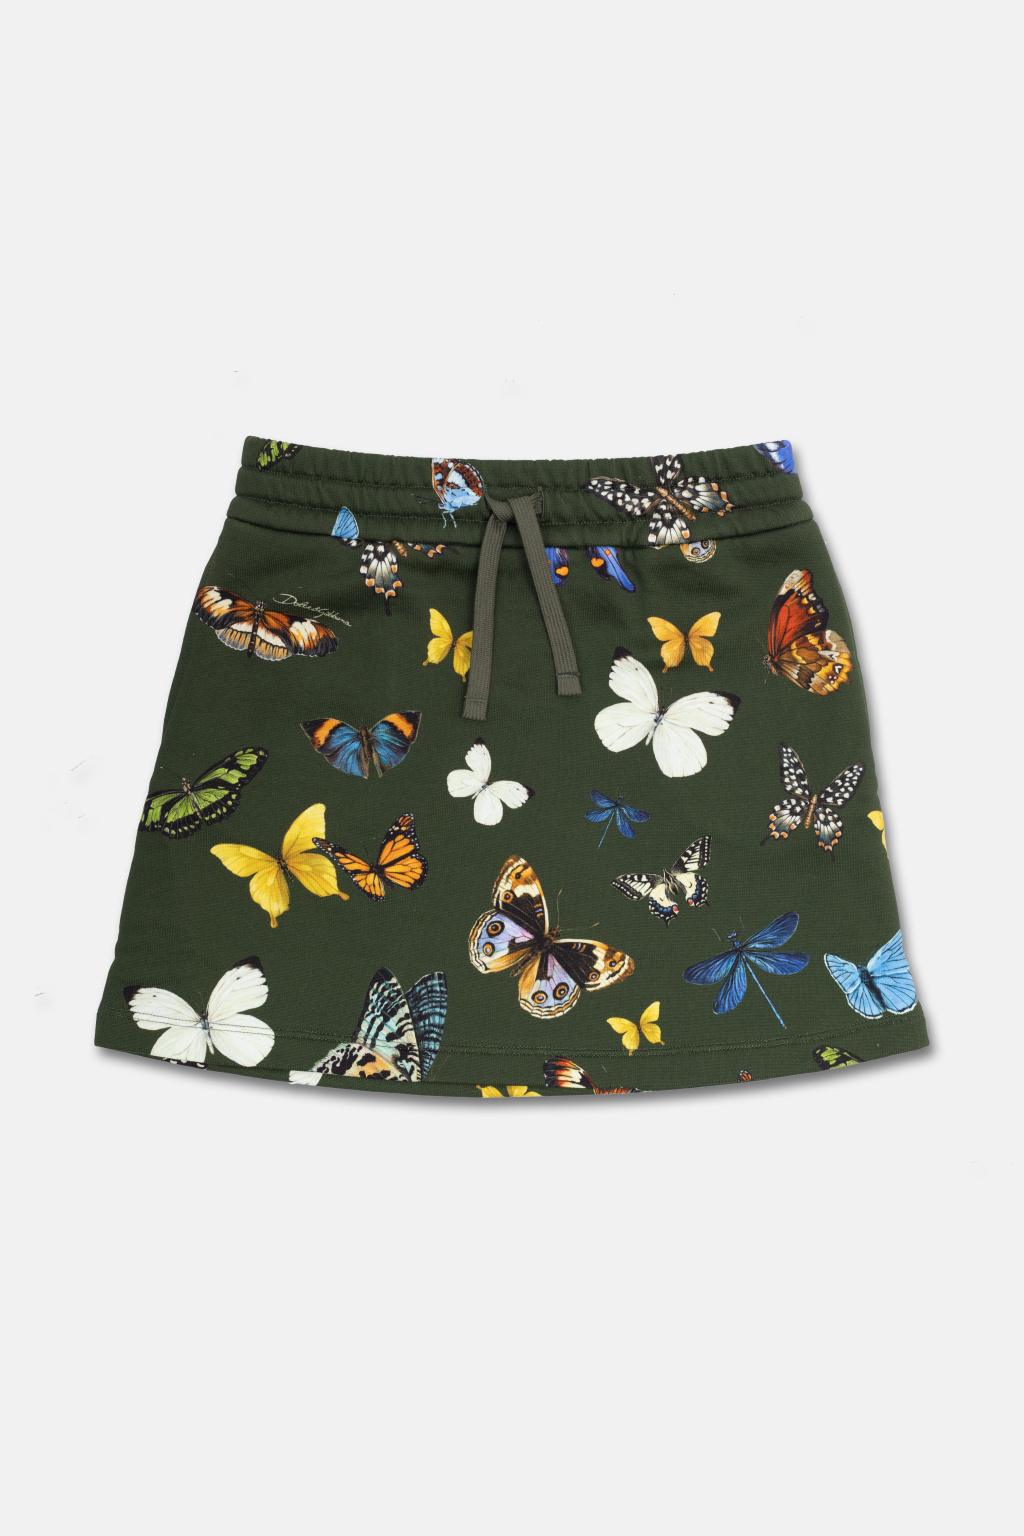 Dolce & Gabbana Kids Skirt with motif of butterflies